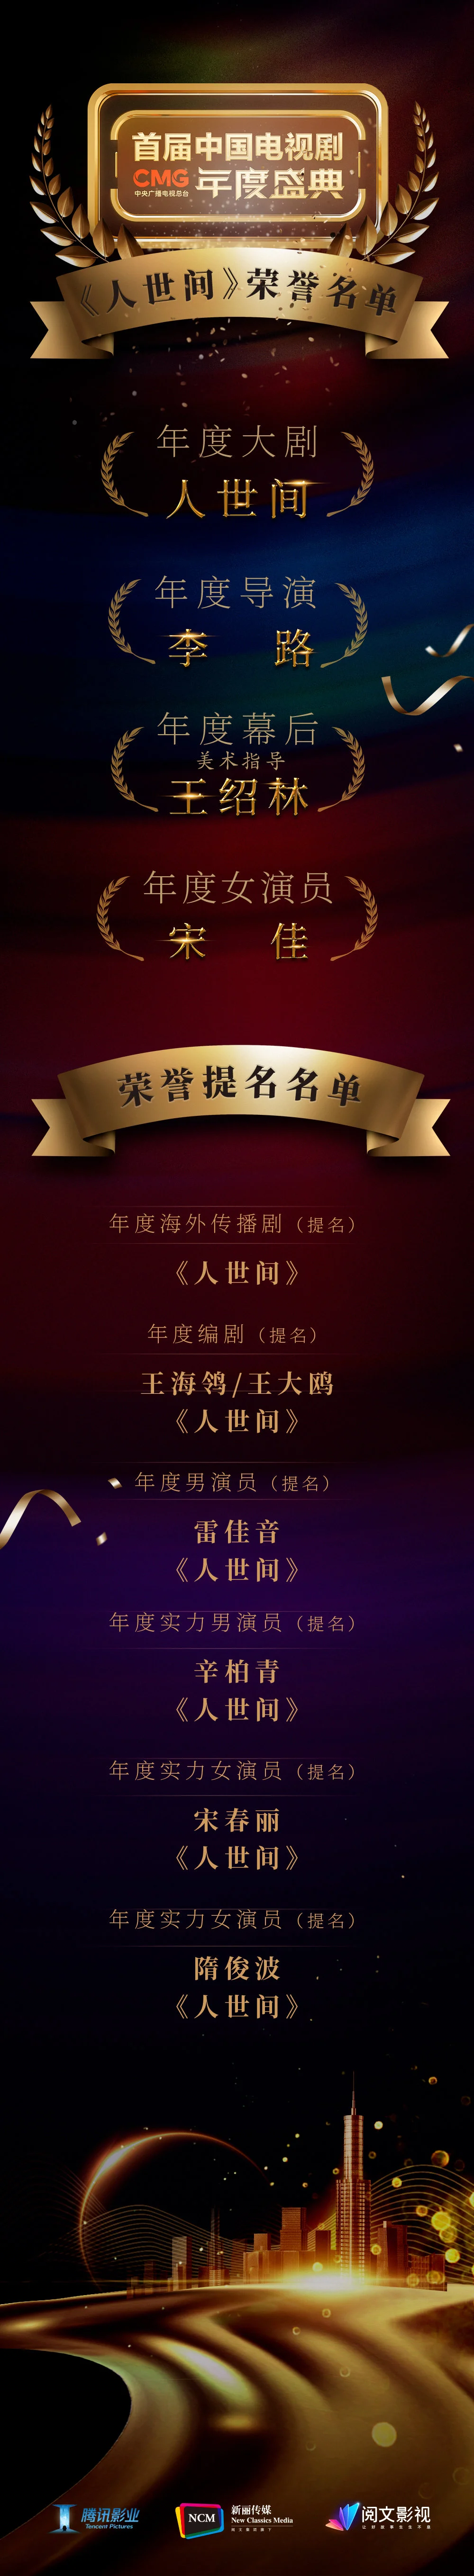 “平民史诗”《人世间》荣获CMG中国电视剧年度盛典“年度大剧”等多项荣誉